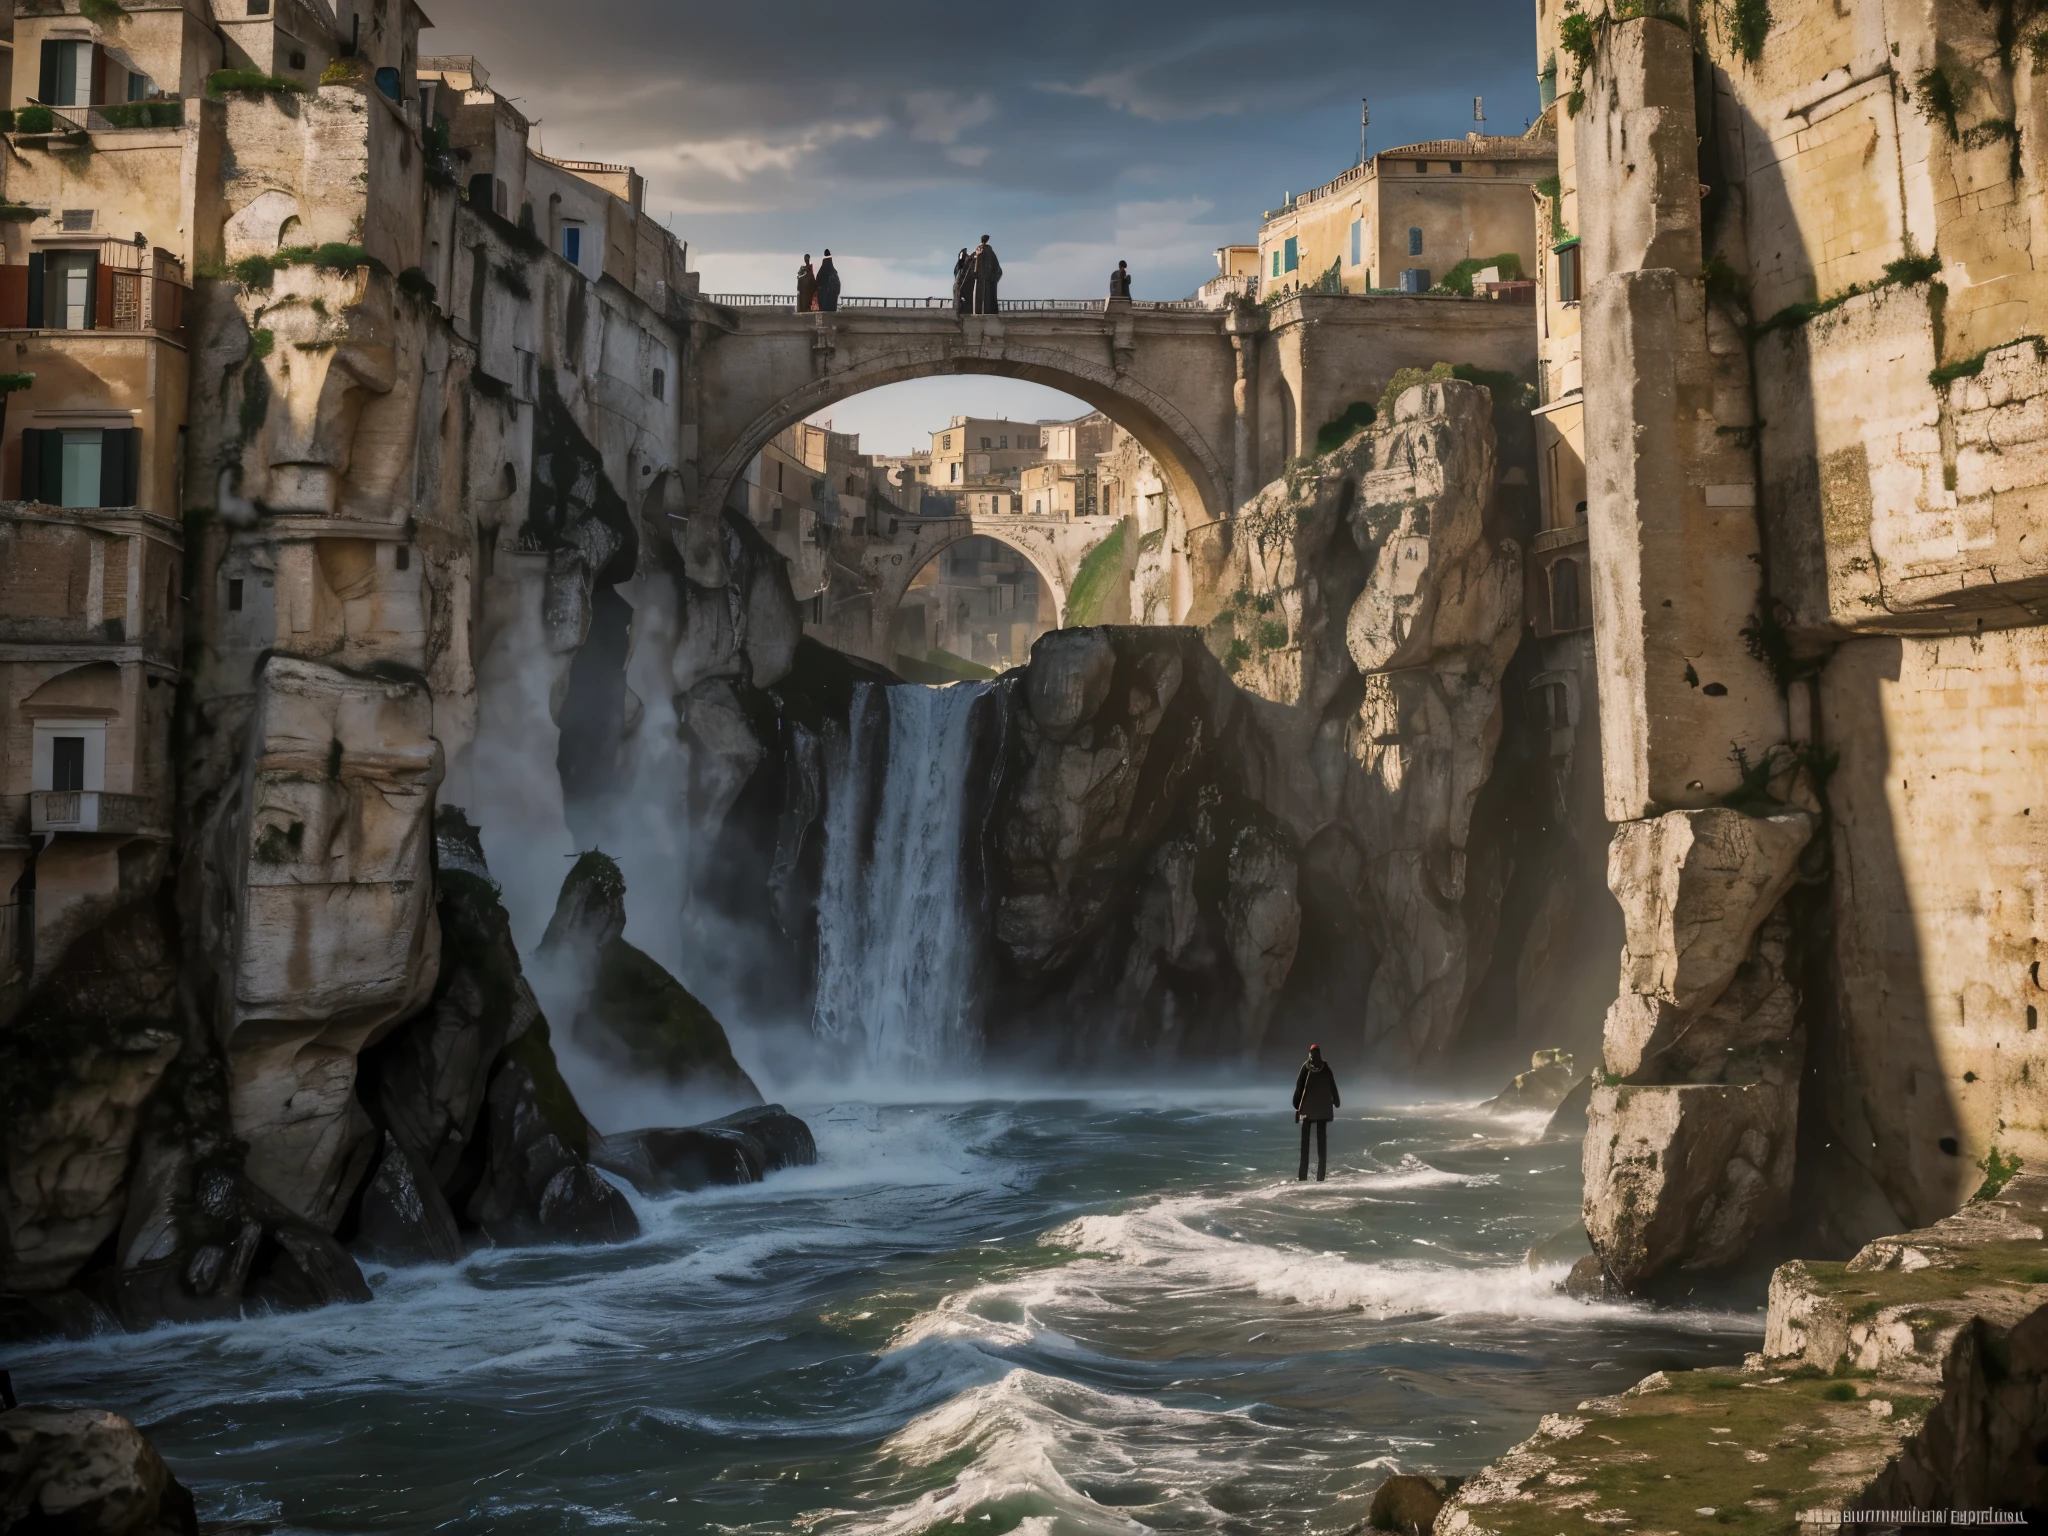 ((اعلى جودة)), (دقة عالية جدًا), (مفصلة للغاية), (وصف تفصيلي), ((أفضل سي جي)), (أفضل عمل فني), فن فائق الدقة, فن الرسم المذهل, (فن خيالي بتفاصيل دقيقة:1.5), مدينة إمبراطورية تشبه البندقية, جسر دخول طويل فوق شلال ضخم إلى المدينة السفلى. Sassi ل Matera, إيطاليا. الحجارة_ل_ماتيرا. في الهواء الطلق في شوارع ماتيرا. الشخصية محاطة بالضباب, مما يثير جو غامض وغريب. الإضاءة مظلمة وجوية, with a red smoke adلng a touch of sinister ambiance. الصورة هي من أفضل نوعية, مع دقة 4K وتعزيز HDR, عرض أقصى مستوى من التفاصيل والواقعية, NSFW, لقطة لكامل الجسم. [[نعم SFW]], photorealistic man wearing a black hooلe is waiting for the Apocalypse.